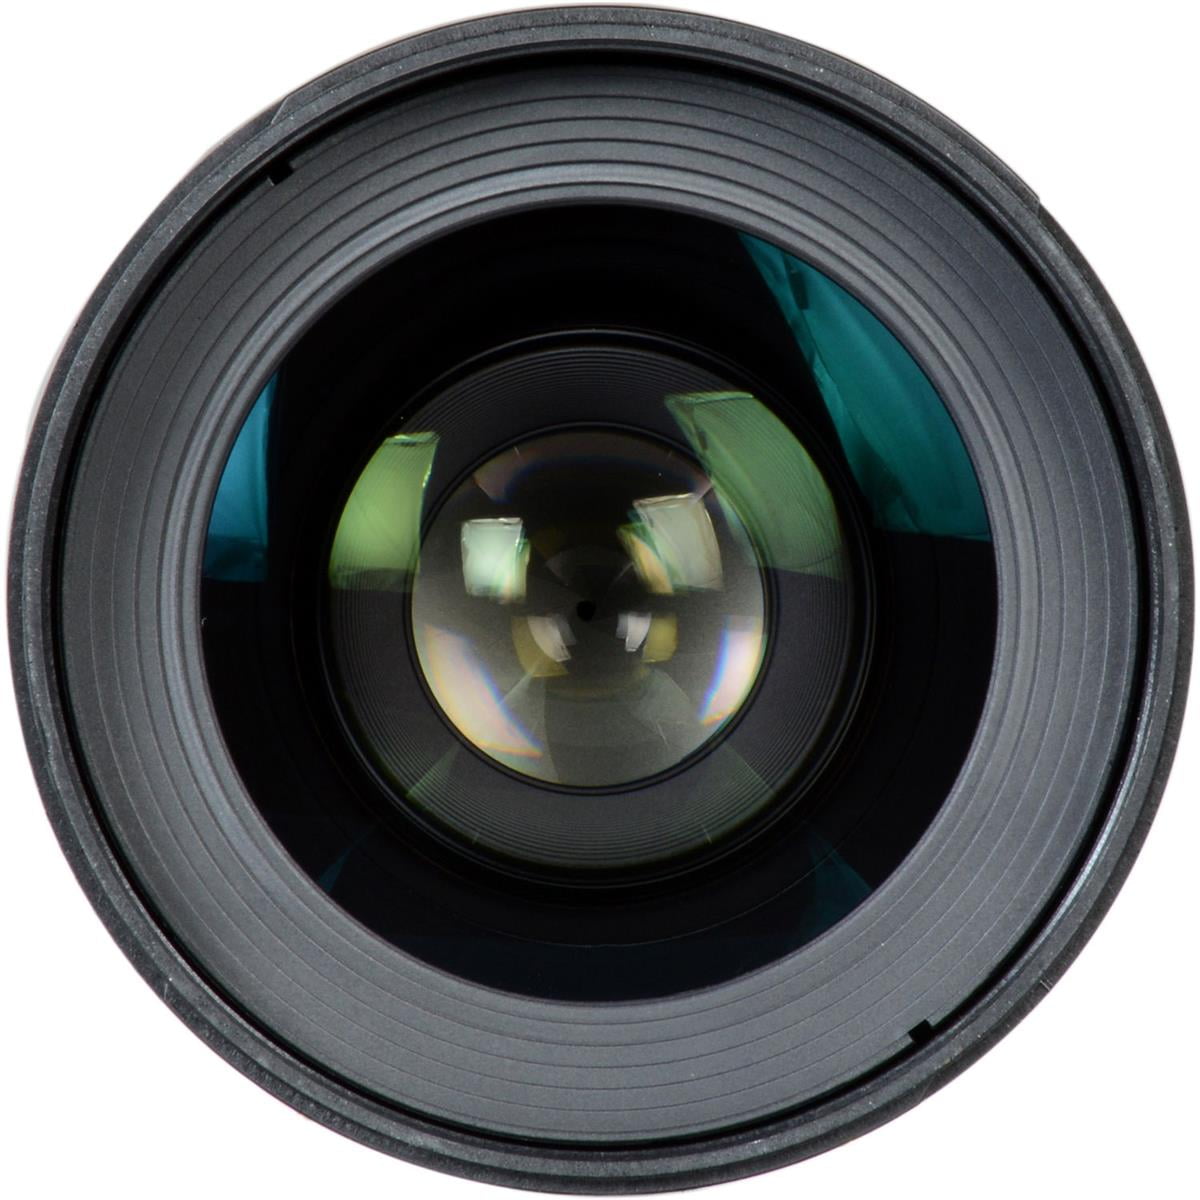 Samyang SYDS35M-C VDSLR II 35mm T1.5 Wide-Angle Cine Lens for Canon EF Cameras 